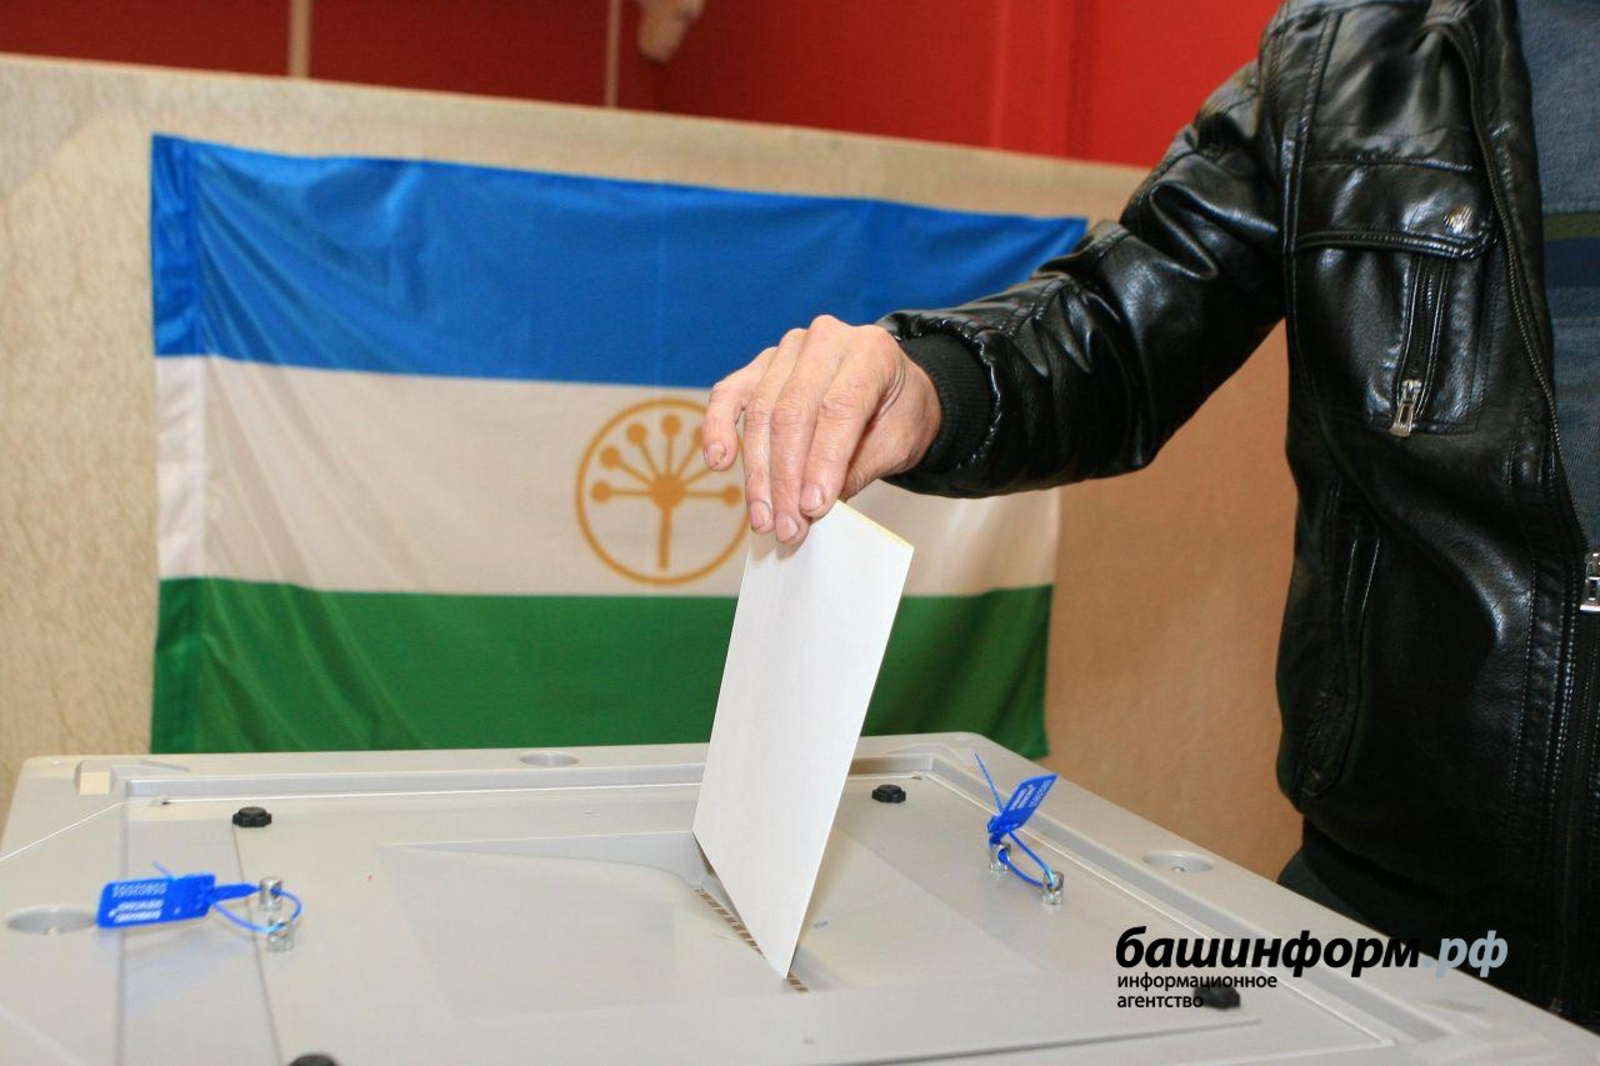 Выборы – 2021 в Башкирии: что нужно знать?